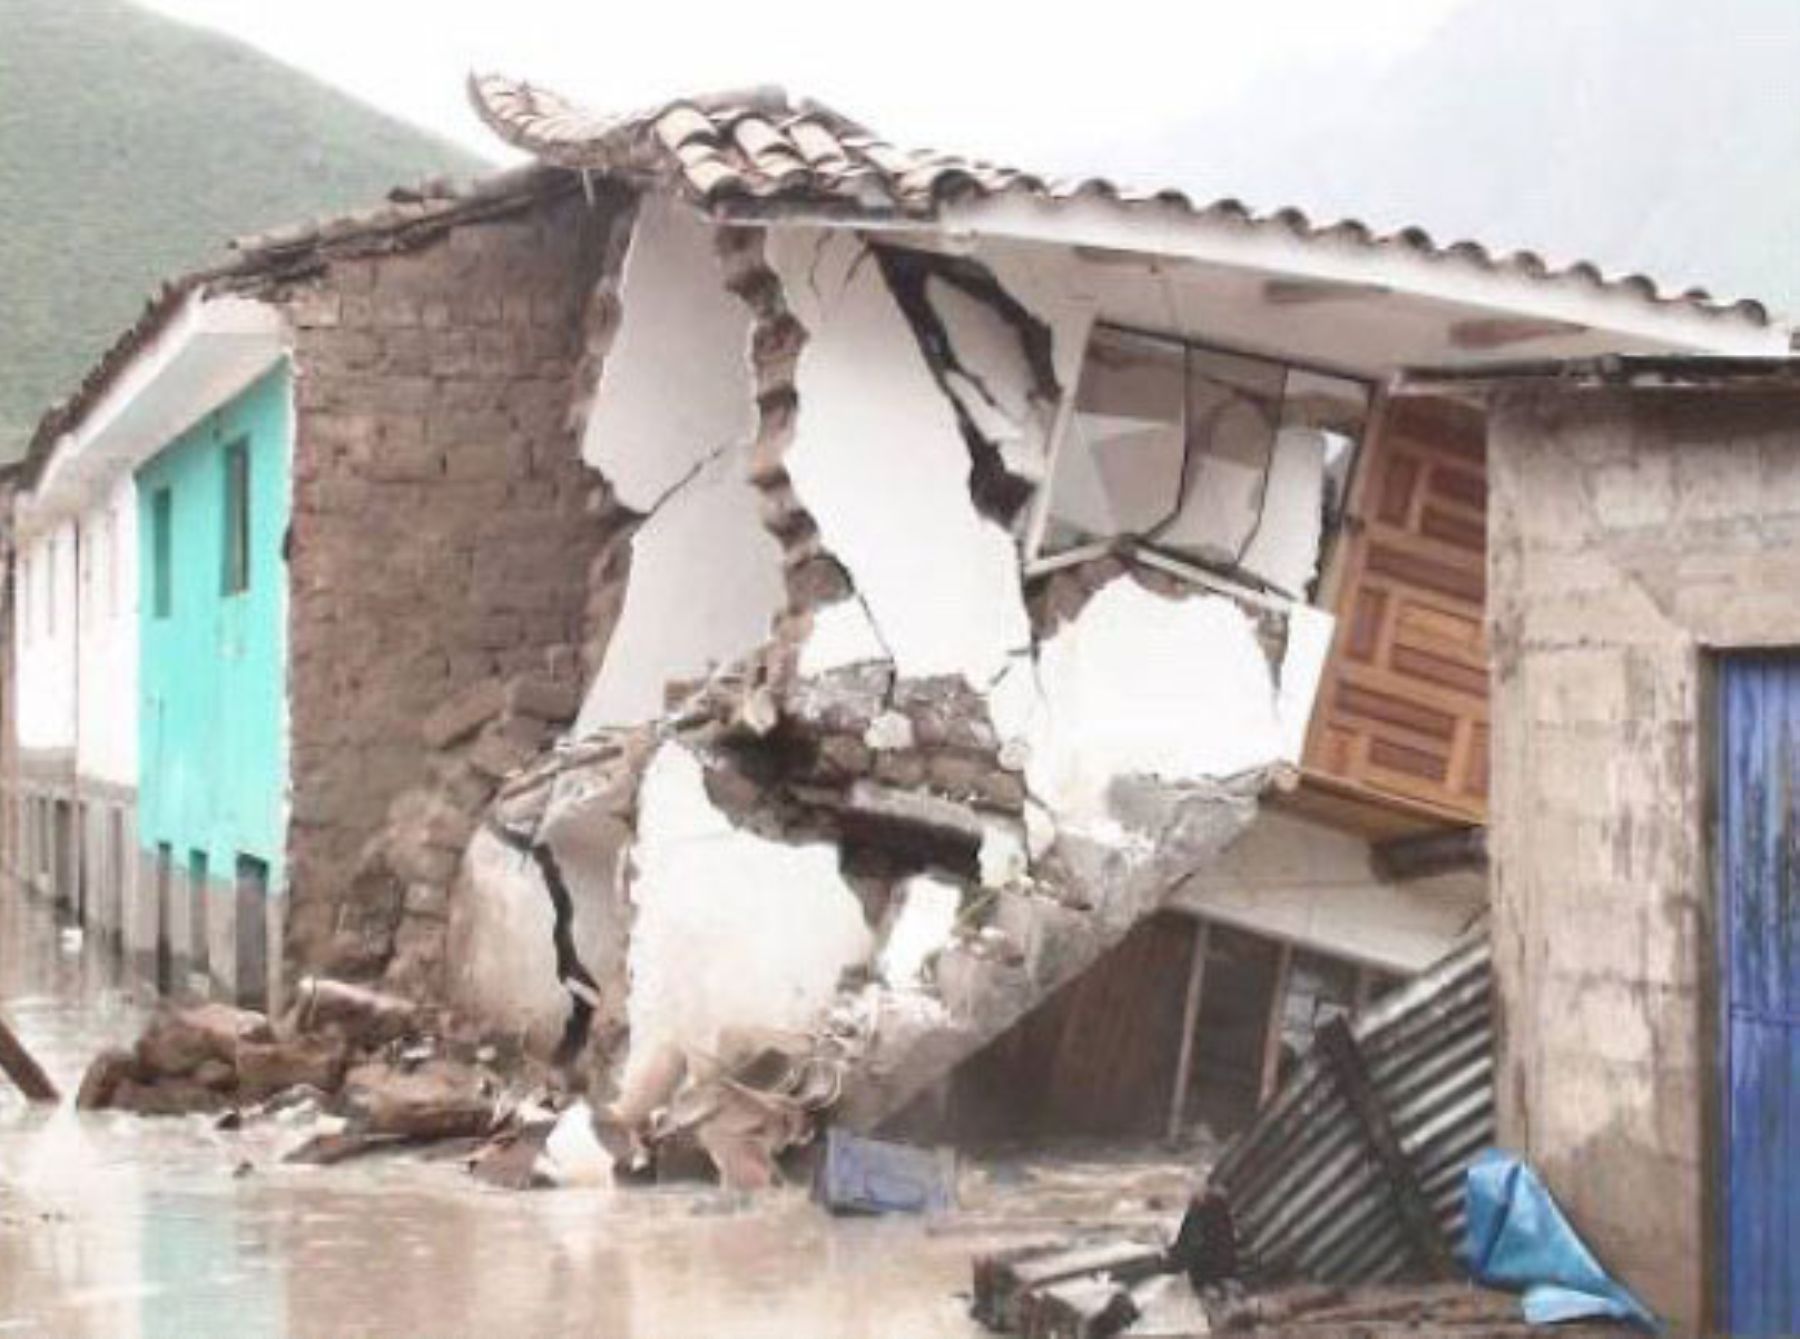 Colapso de viviendas a consecuencia de fuertes precipitaciones pluviales, en provincia de Calca. Foto: Indeci.